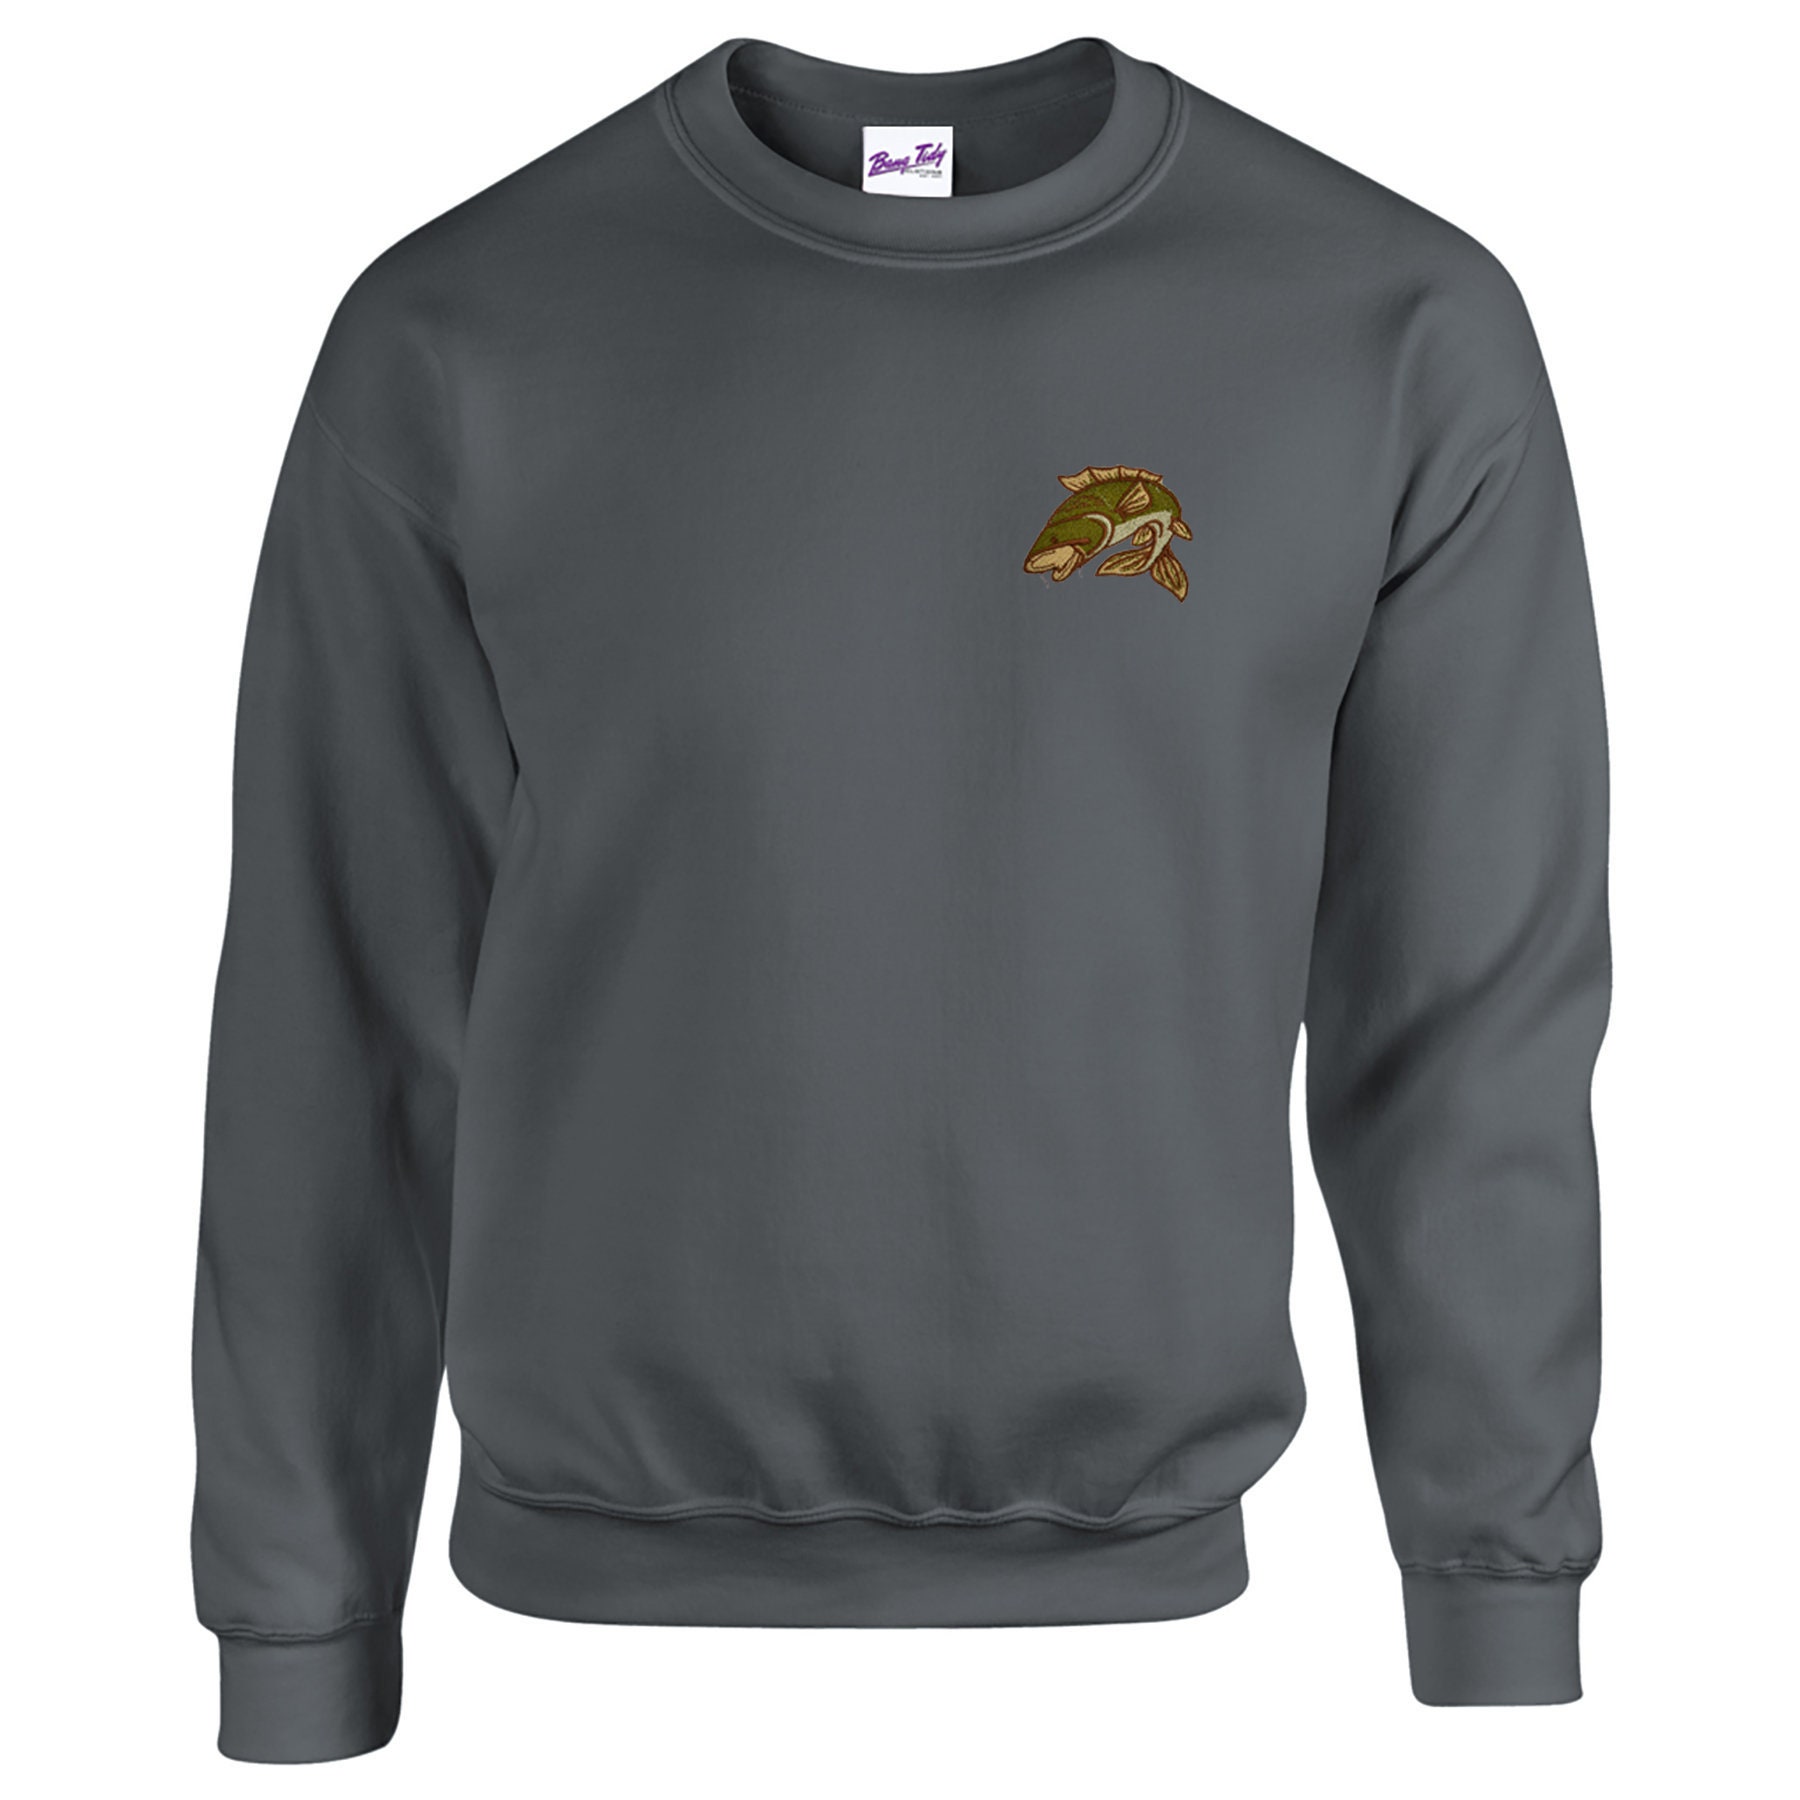 Fishing Gifts For Men - Carp Sweatshirt